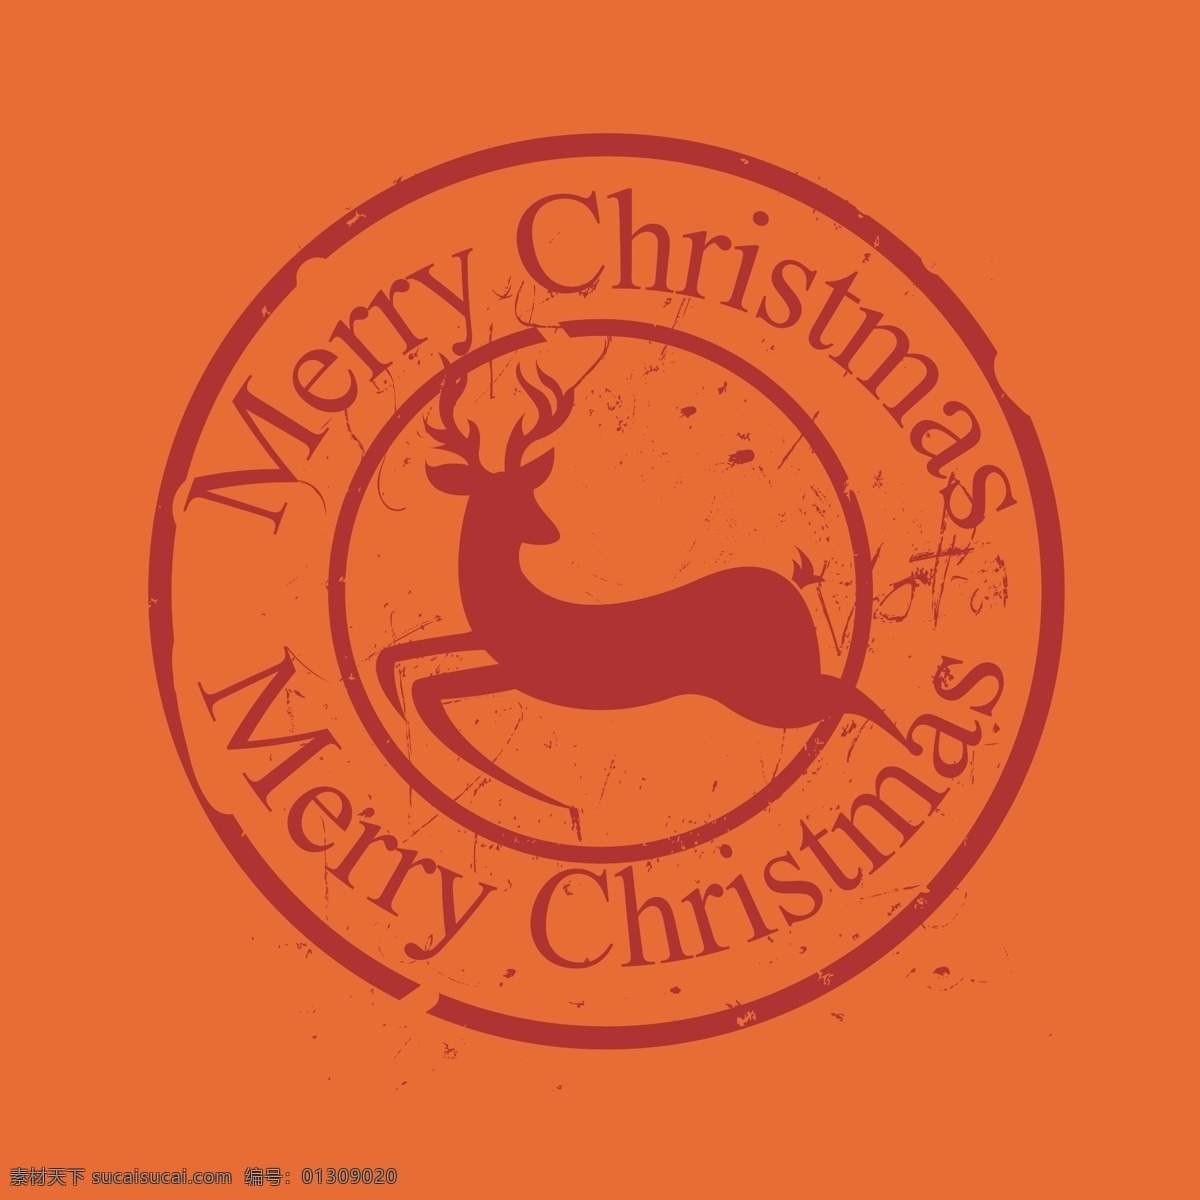 圣诞 图标 矢量 圣诞节 麋鹿 橘色 矢量素材 设计素材